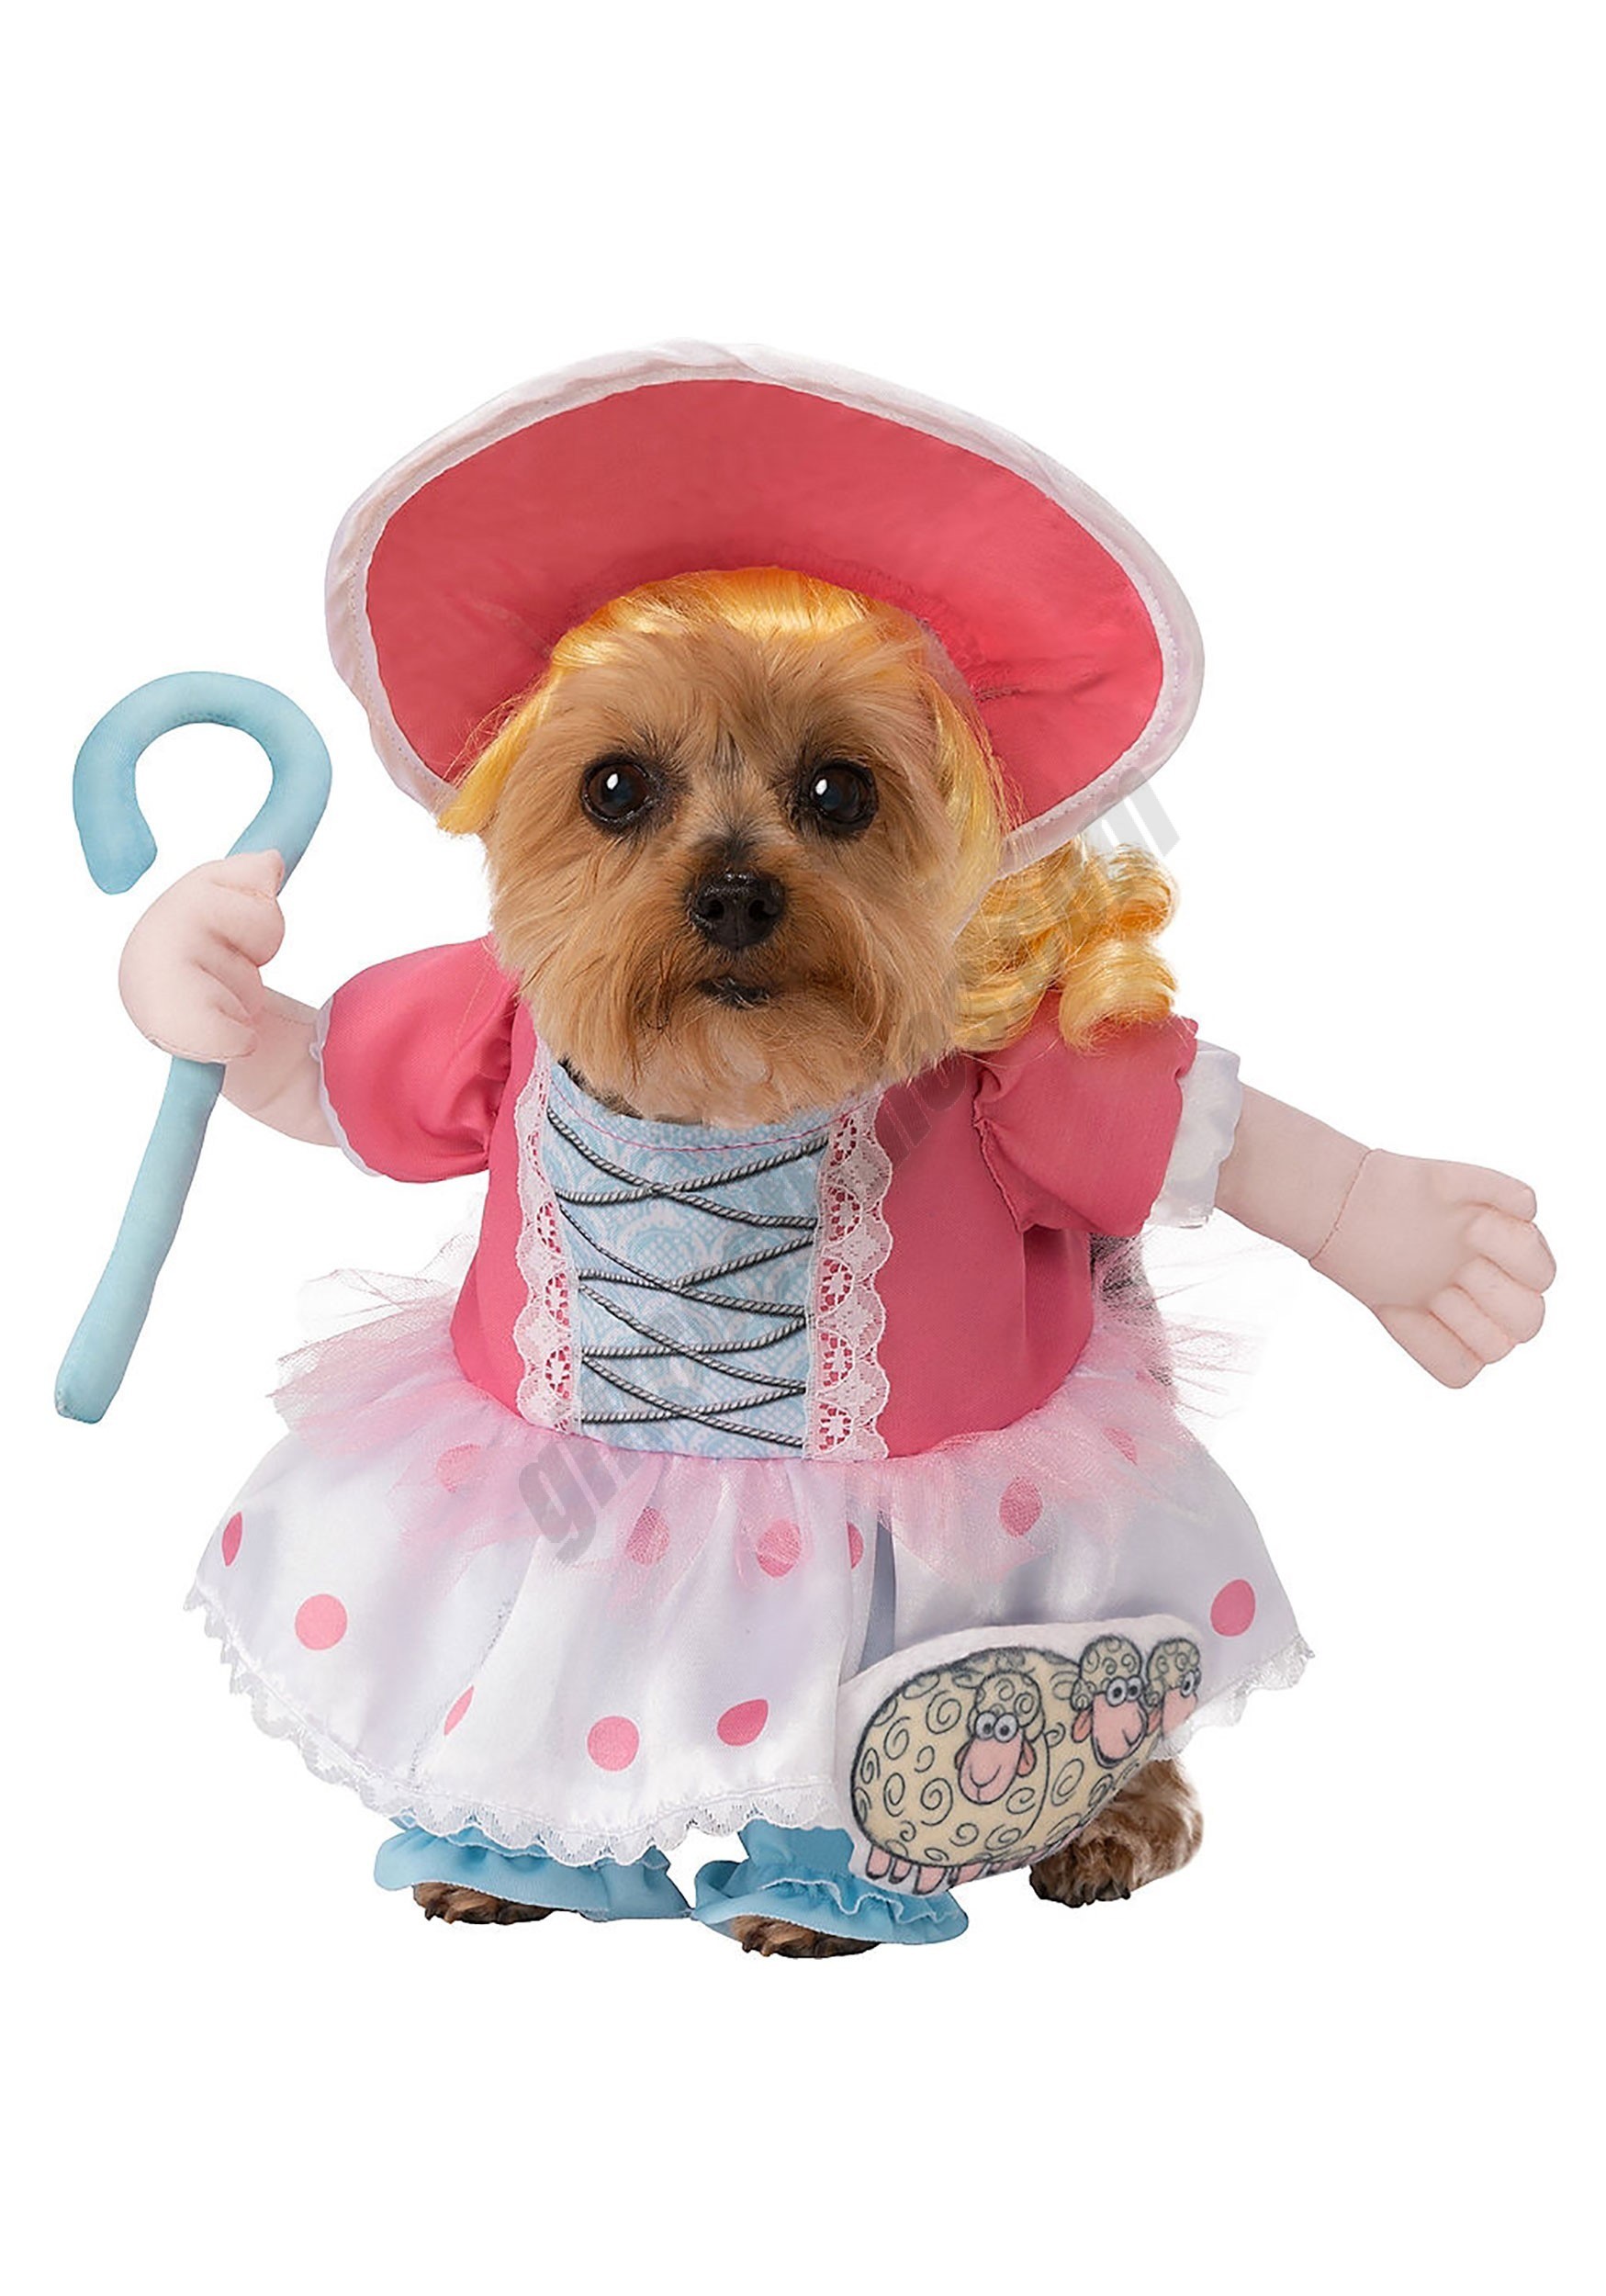 Bo Peep Toy Story Dog Costume Promotions - Bo Peep Toy Story Dog Costume Promotions